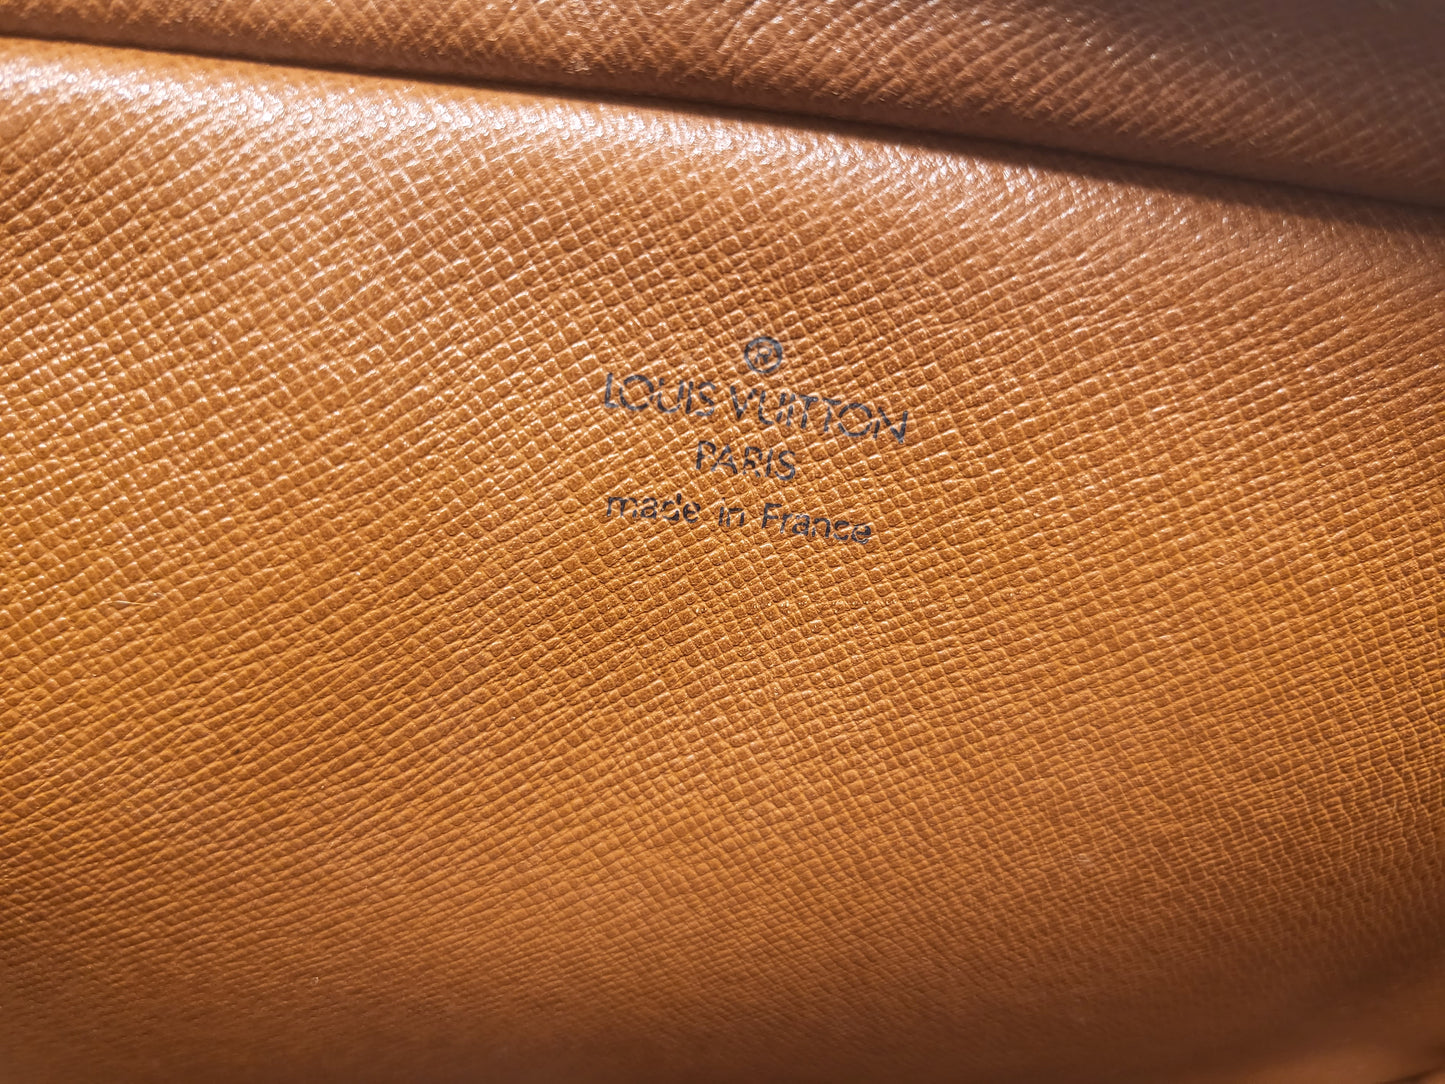 Authentic pre-owned Louis Vuitton Saint Germain 28 crossbody shoulder bag